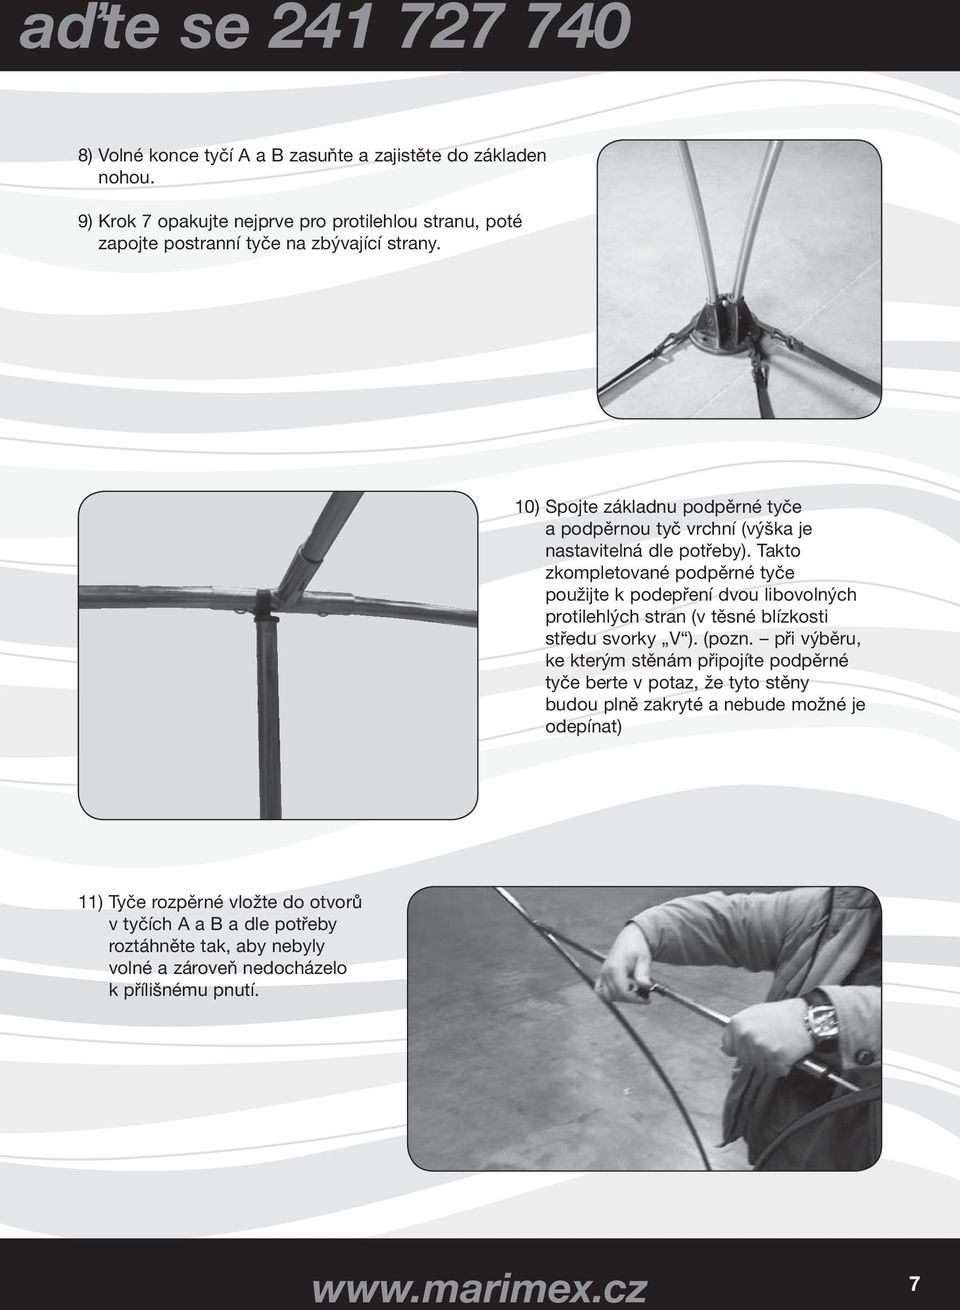 10) Spojte základnu podpěrné tyče a podpěrnou tyč vrchní (výška je nastavitelná dle potřeby).